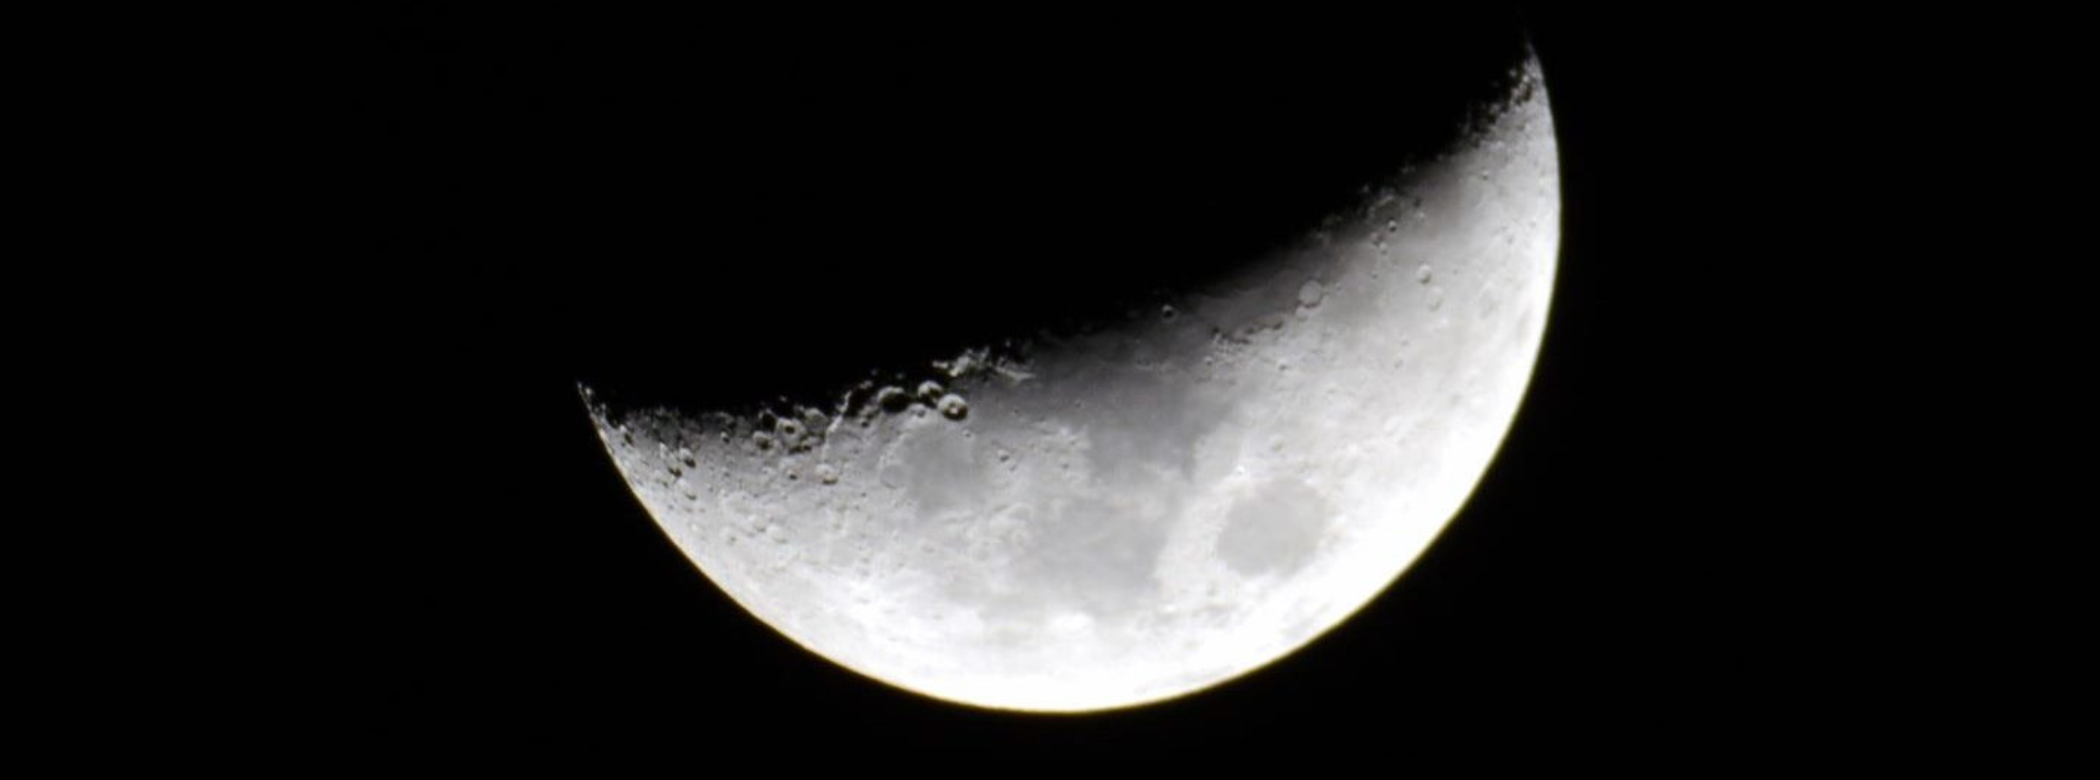 Close-up of a crescent moon.